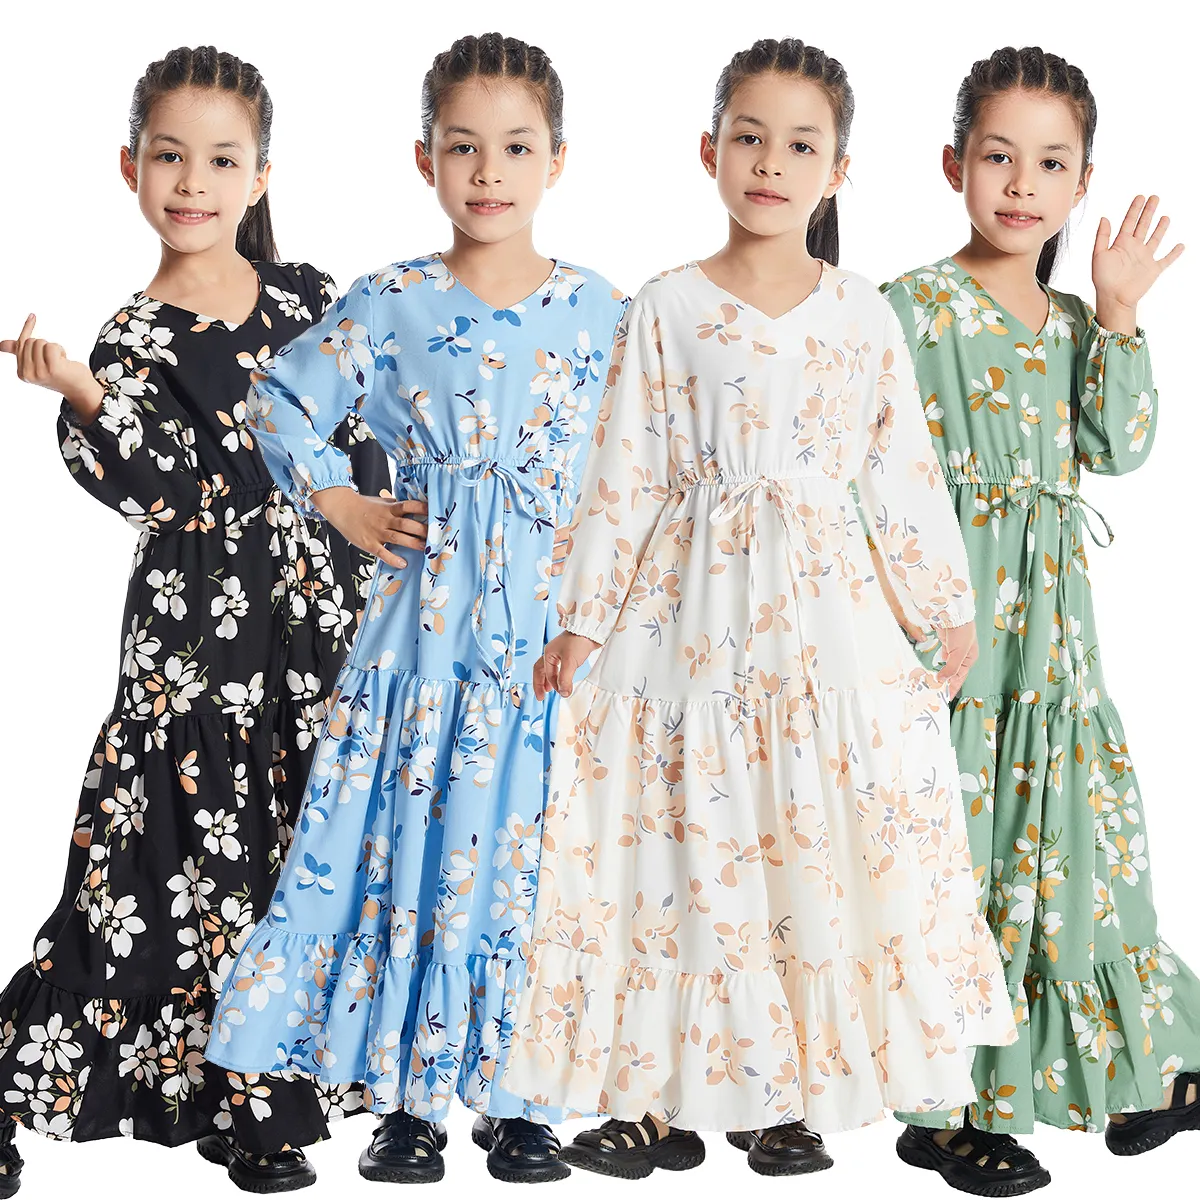 मुस्लिम बच्चों फैशन इस्लामी Jilbab बच्चों के कपड़े लंबी मैक्सी पोशाक लड़कियों आकस्मिक प्रिंट पोशाक